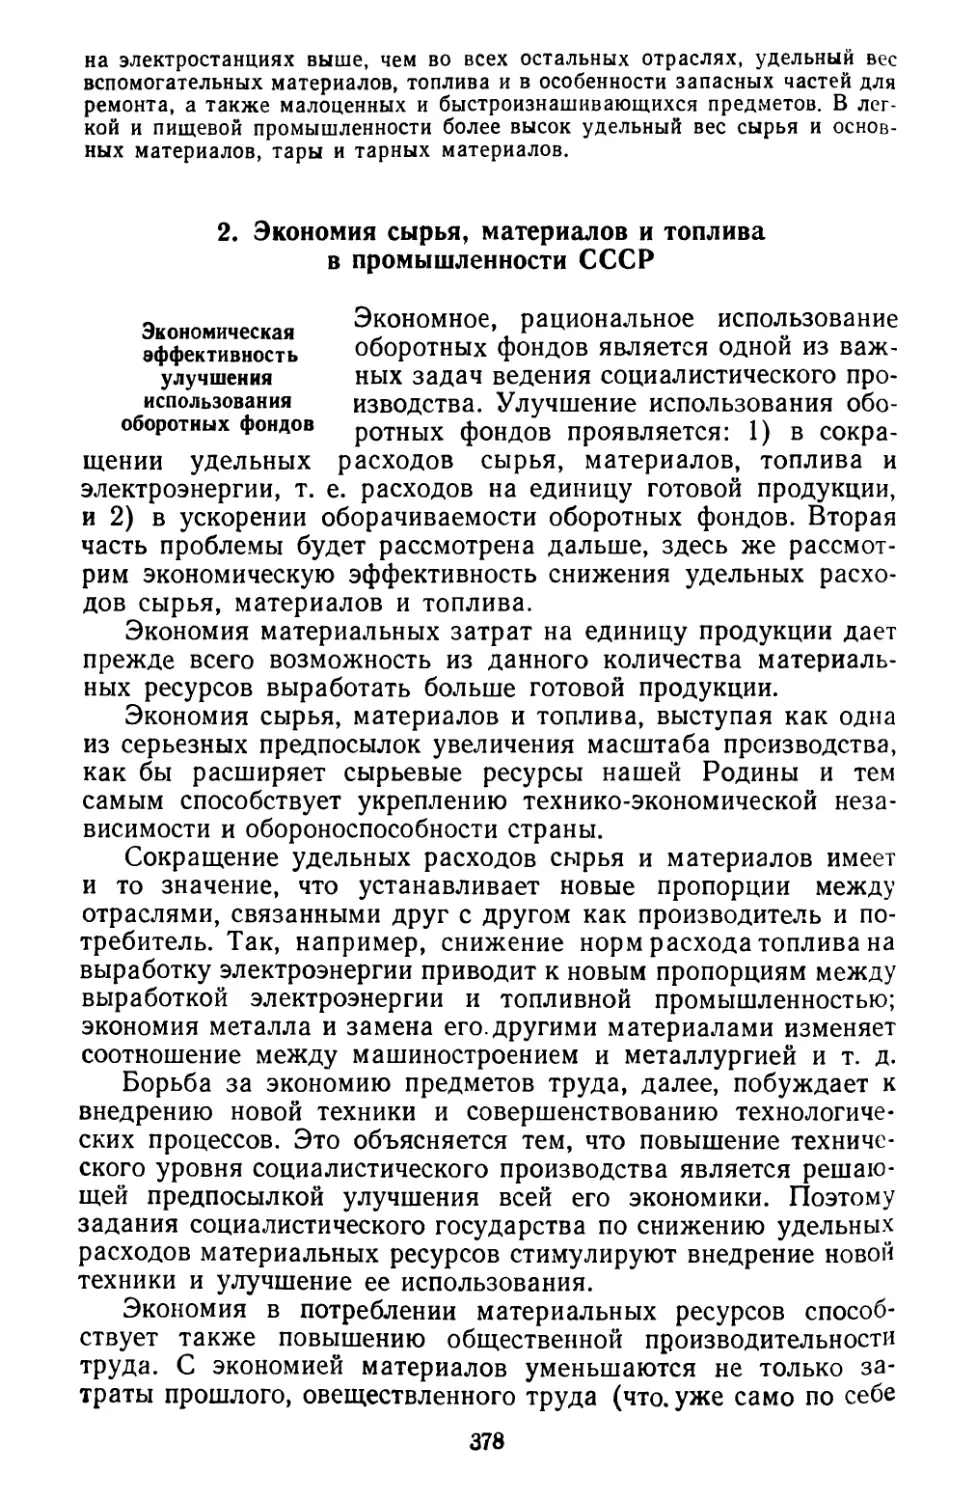 2. Экономия сырья, материалов и топлива в промышленности СССР